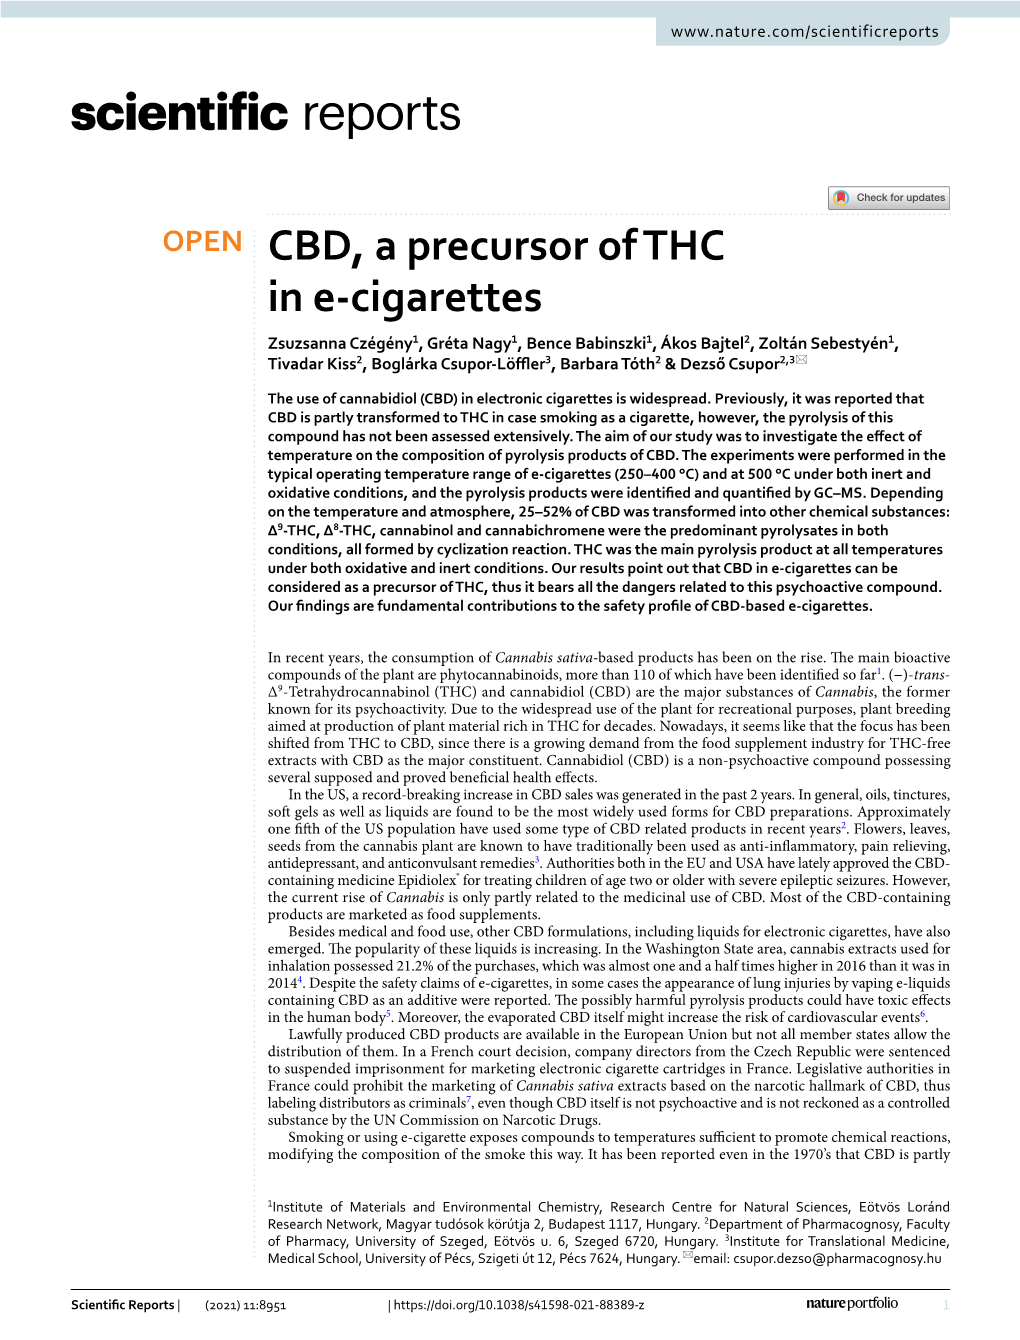 CBD, a Precursor of THC in E-Cigarettes